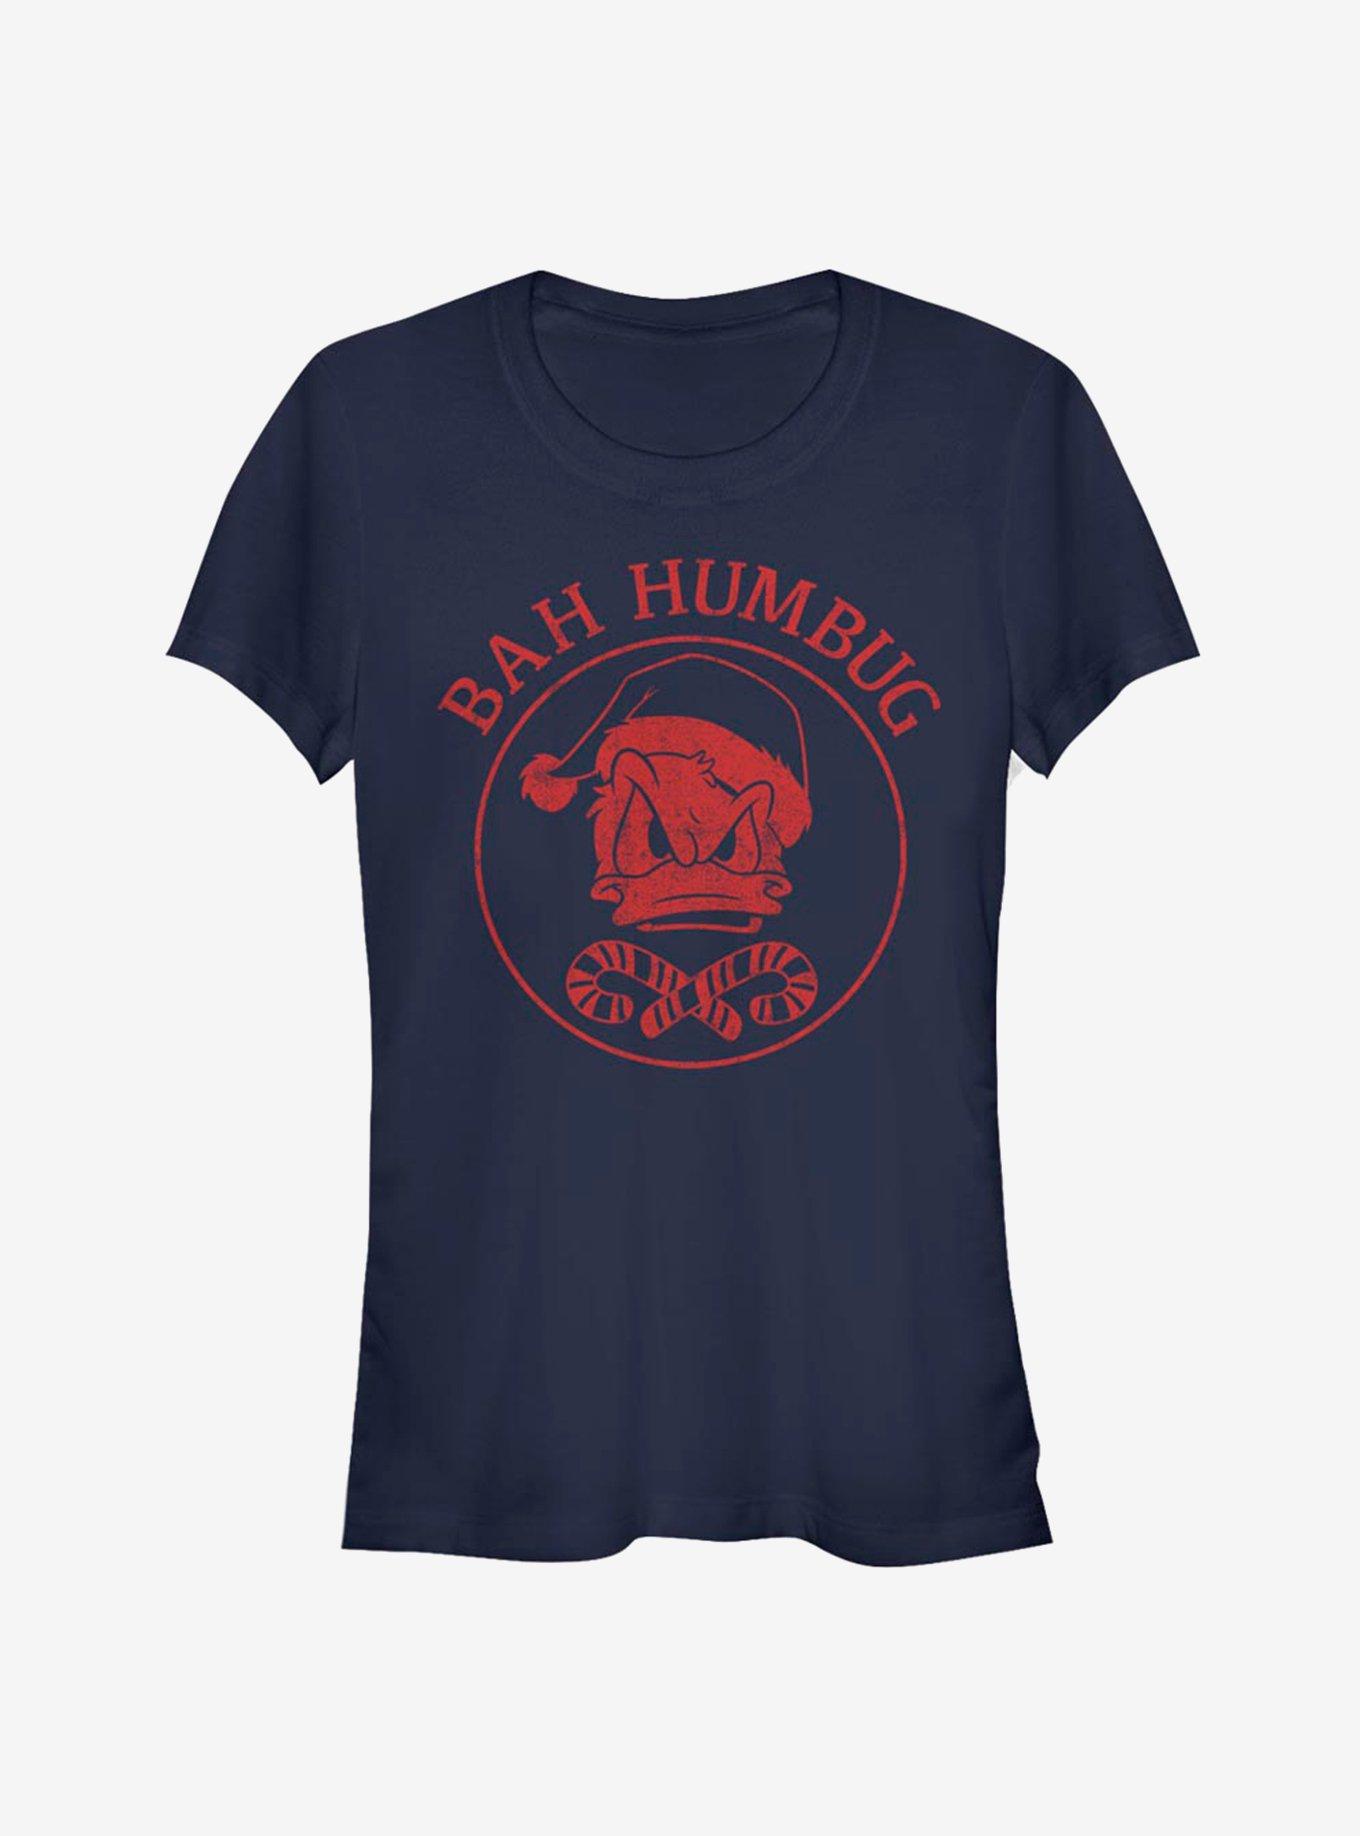 Disney Donald Bah Humbug Classic Girls T-Shirt, NAVY, hi-res